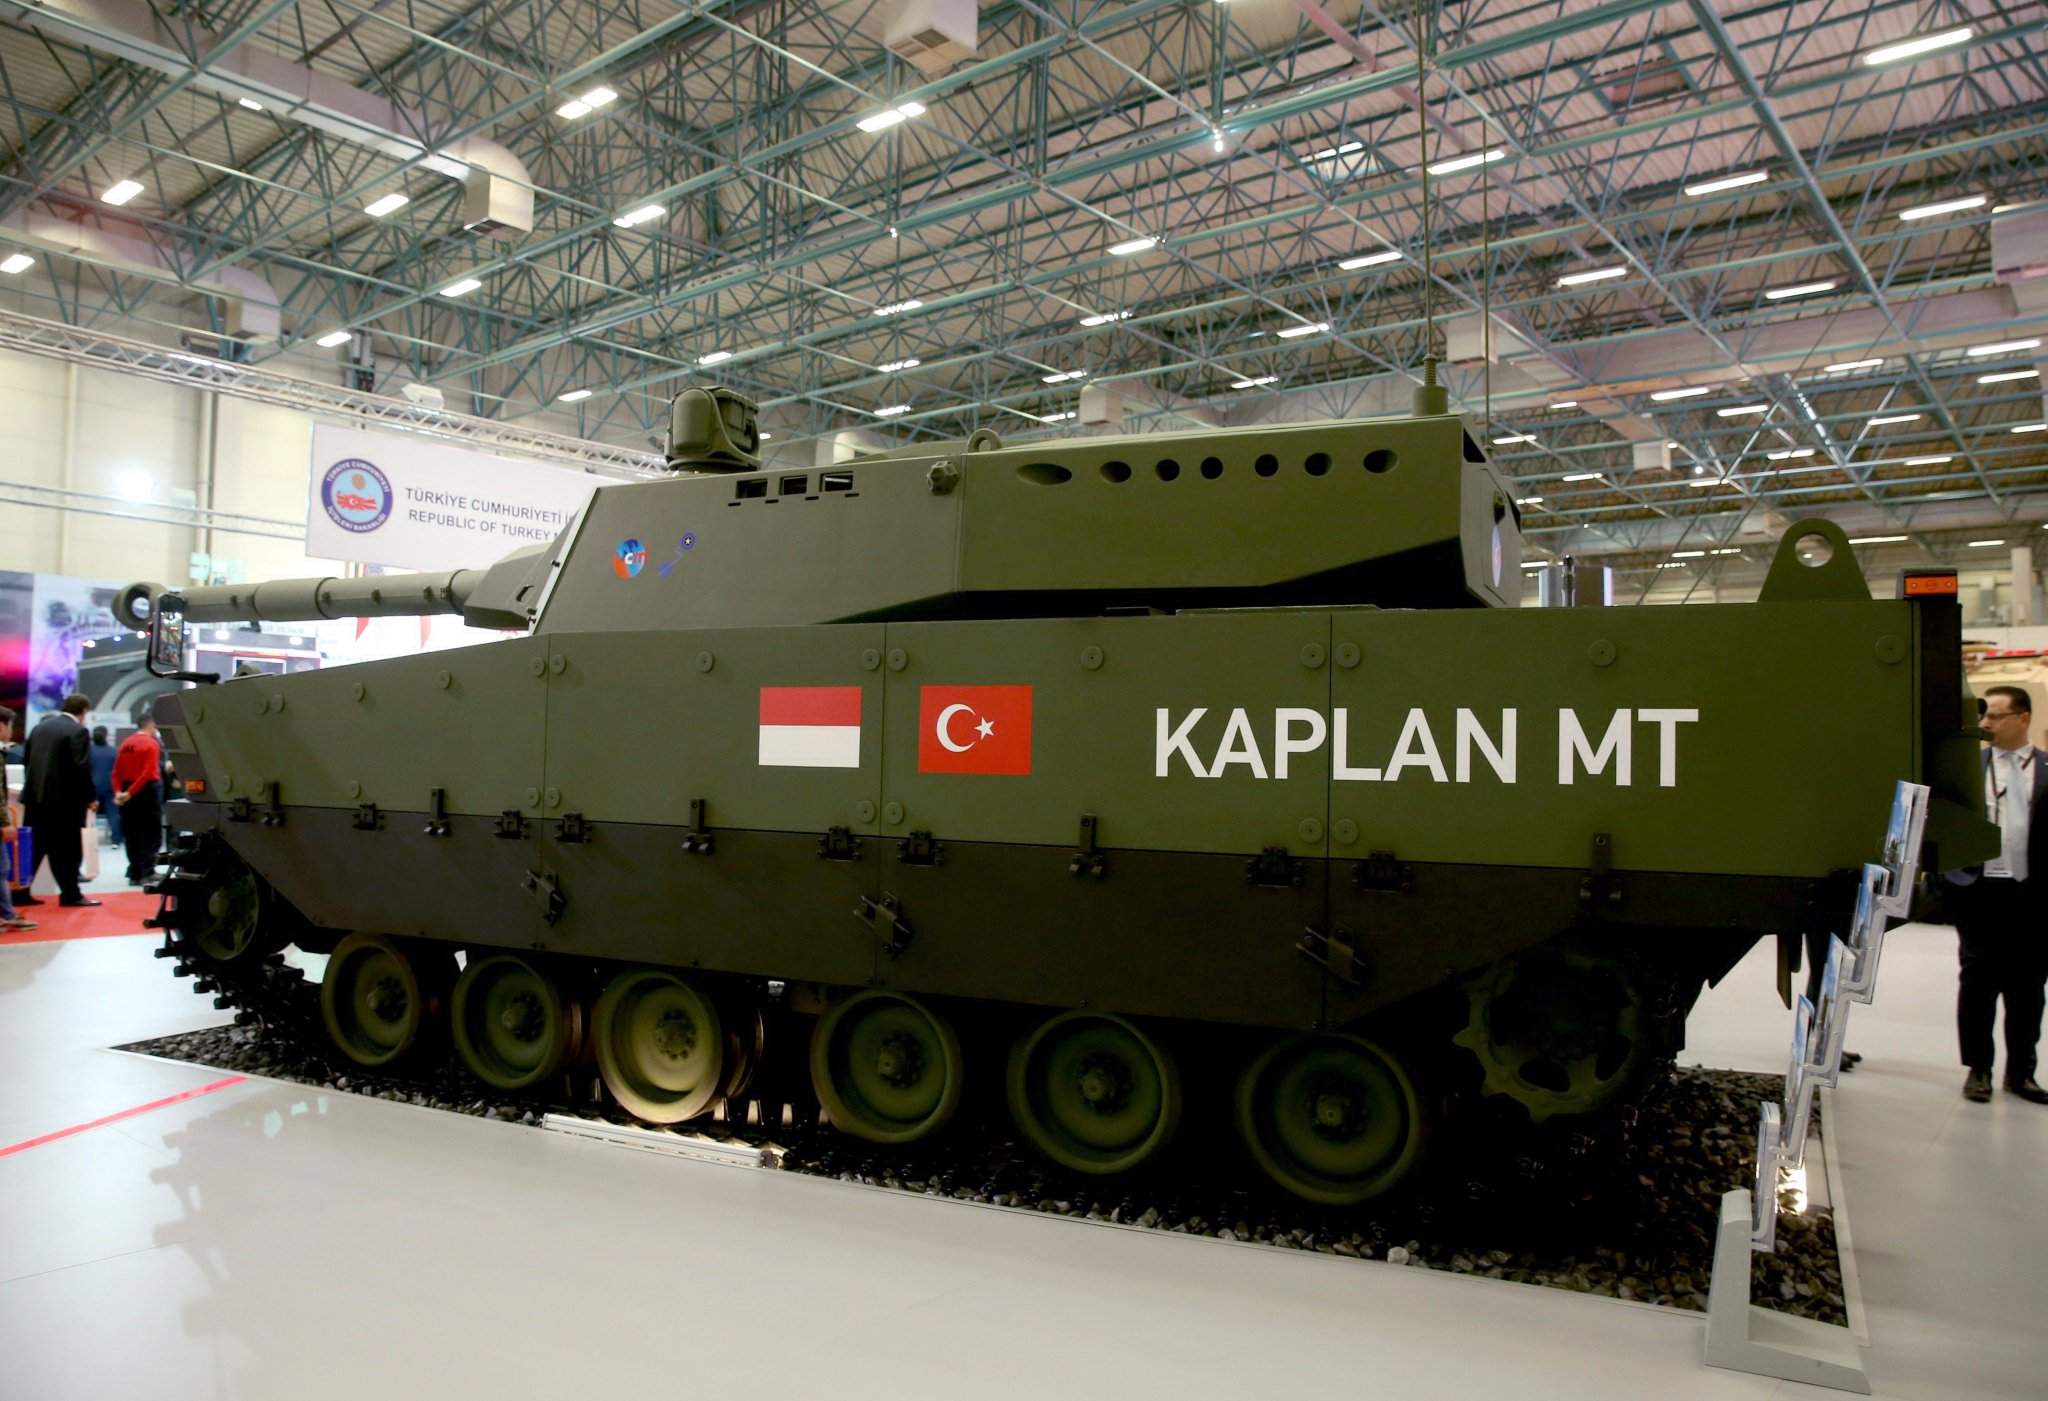 Թուրքական բանակը ստացել է Kaplan MT տանկեր